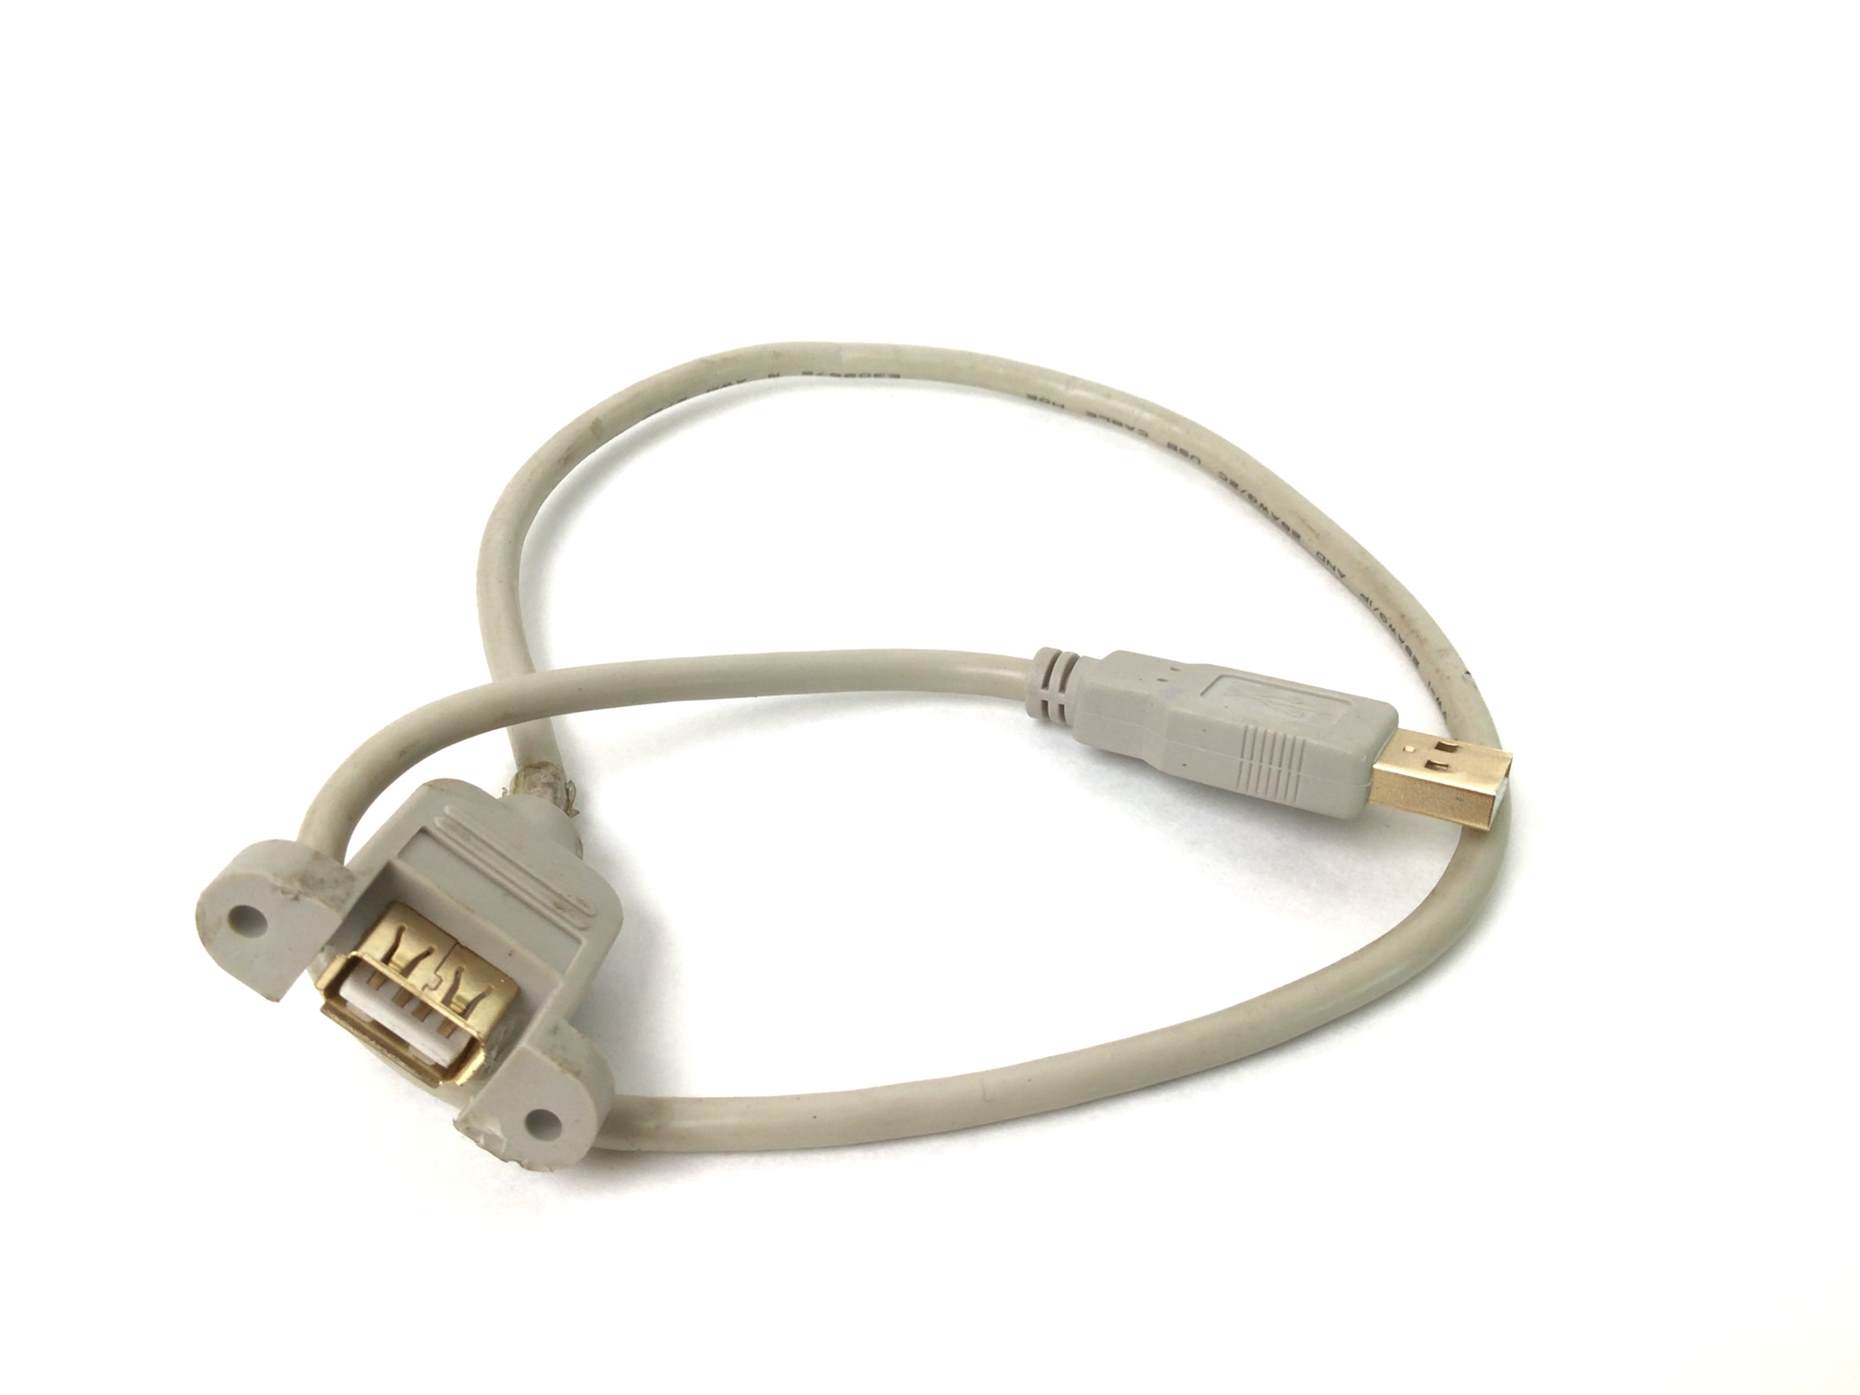 Plugable USB to VGA Cable Internal (Used)